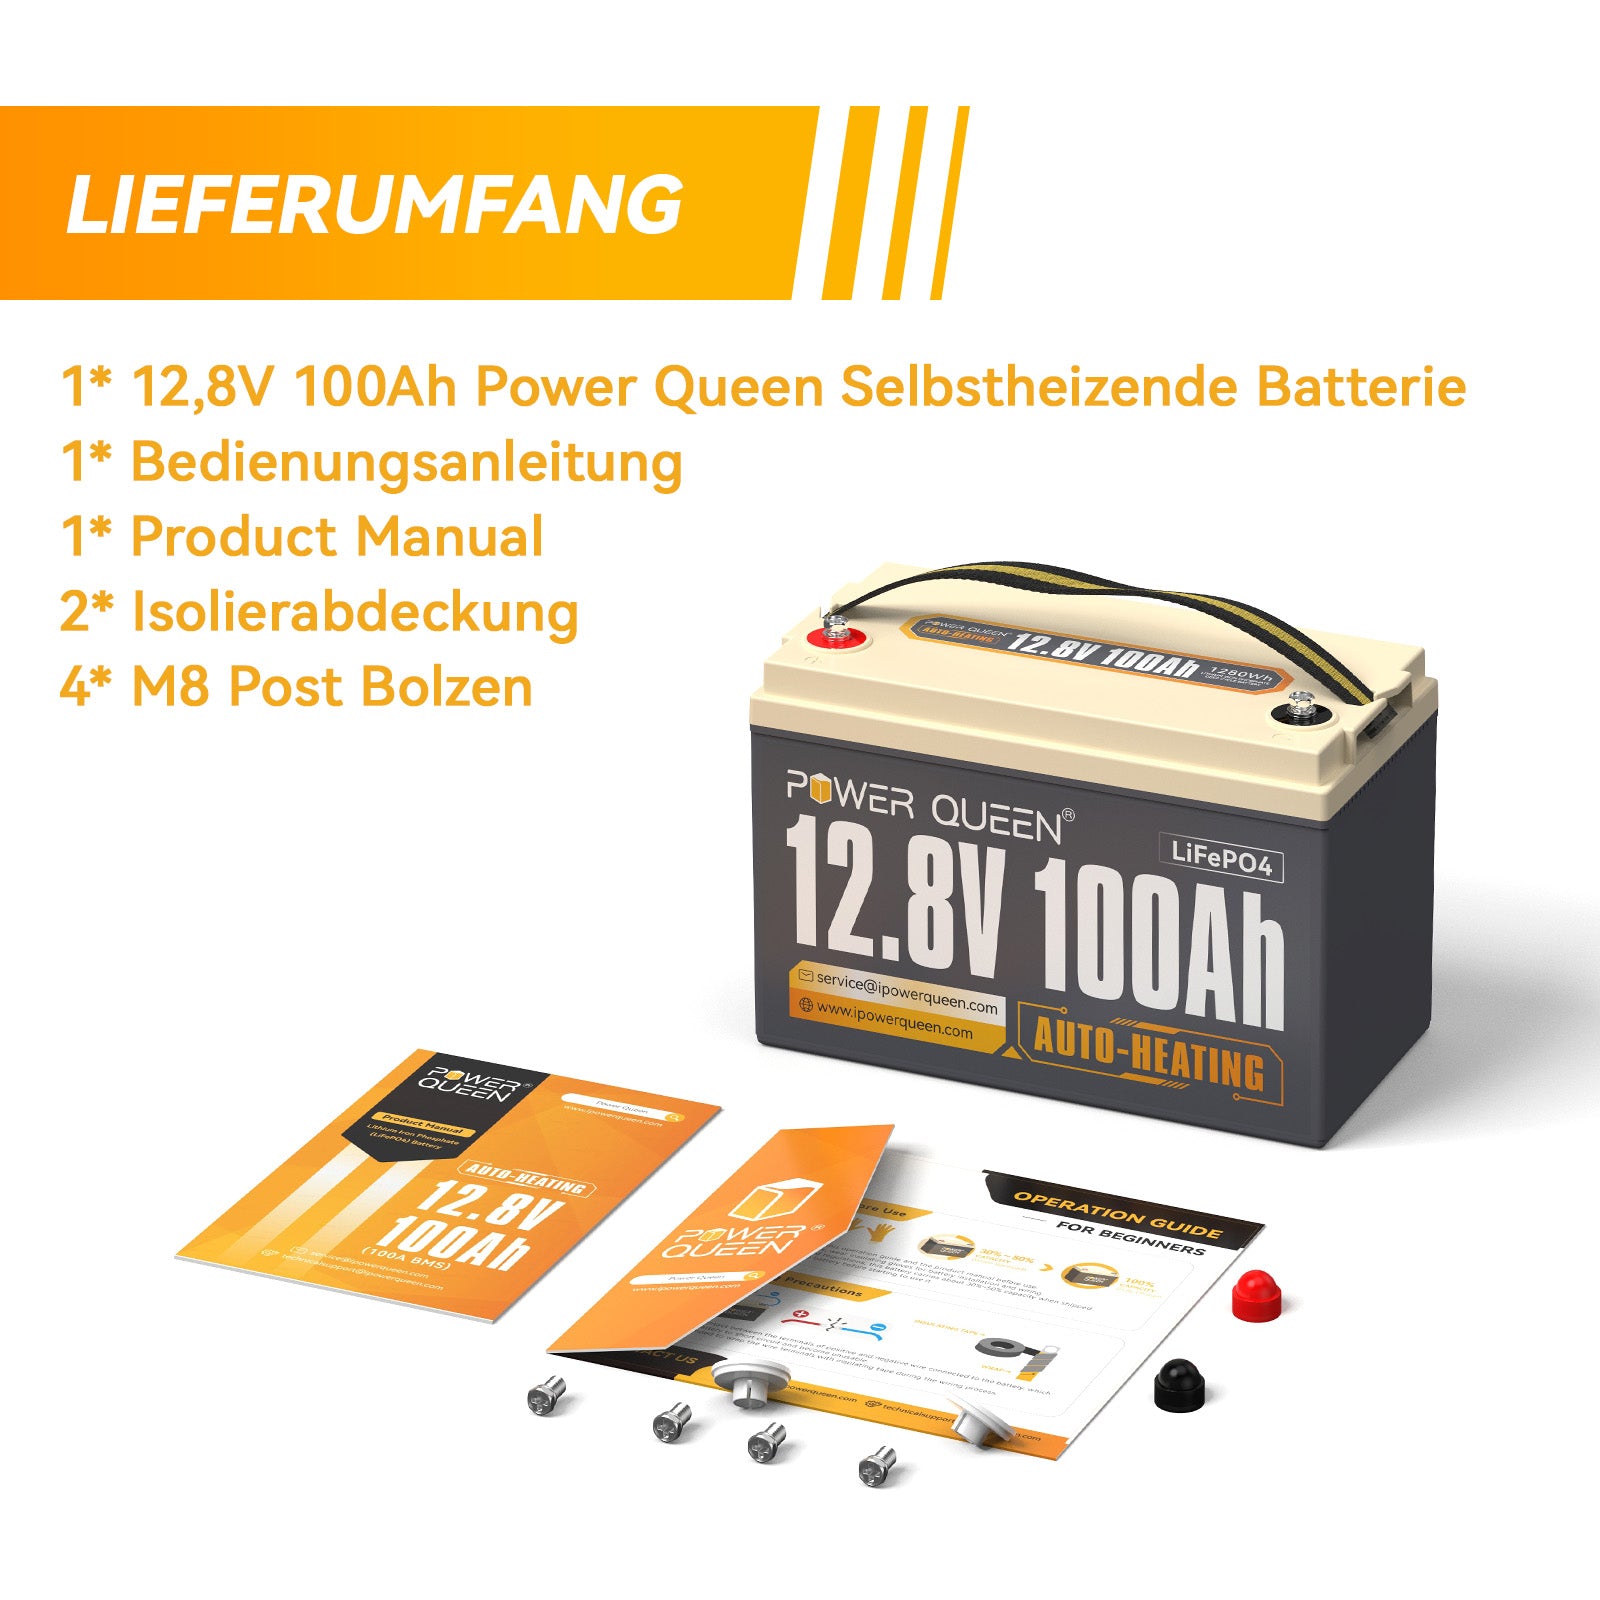 【0% BTW】Power Queen 12,8 V 100 Ah zelfverwarmende LiFePO4-batterij, ingebouwd 100 A BMS